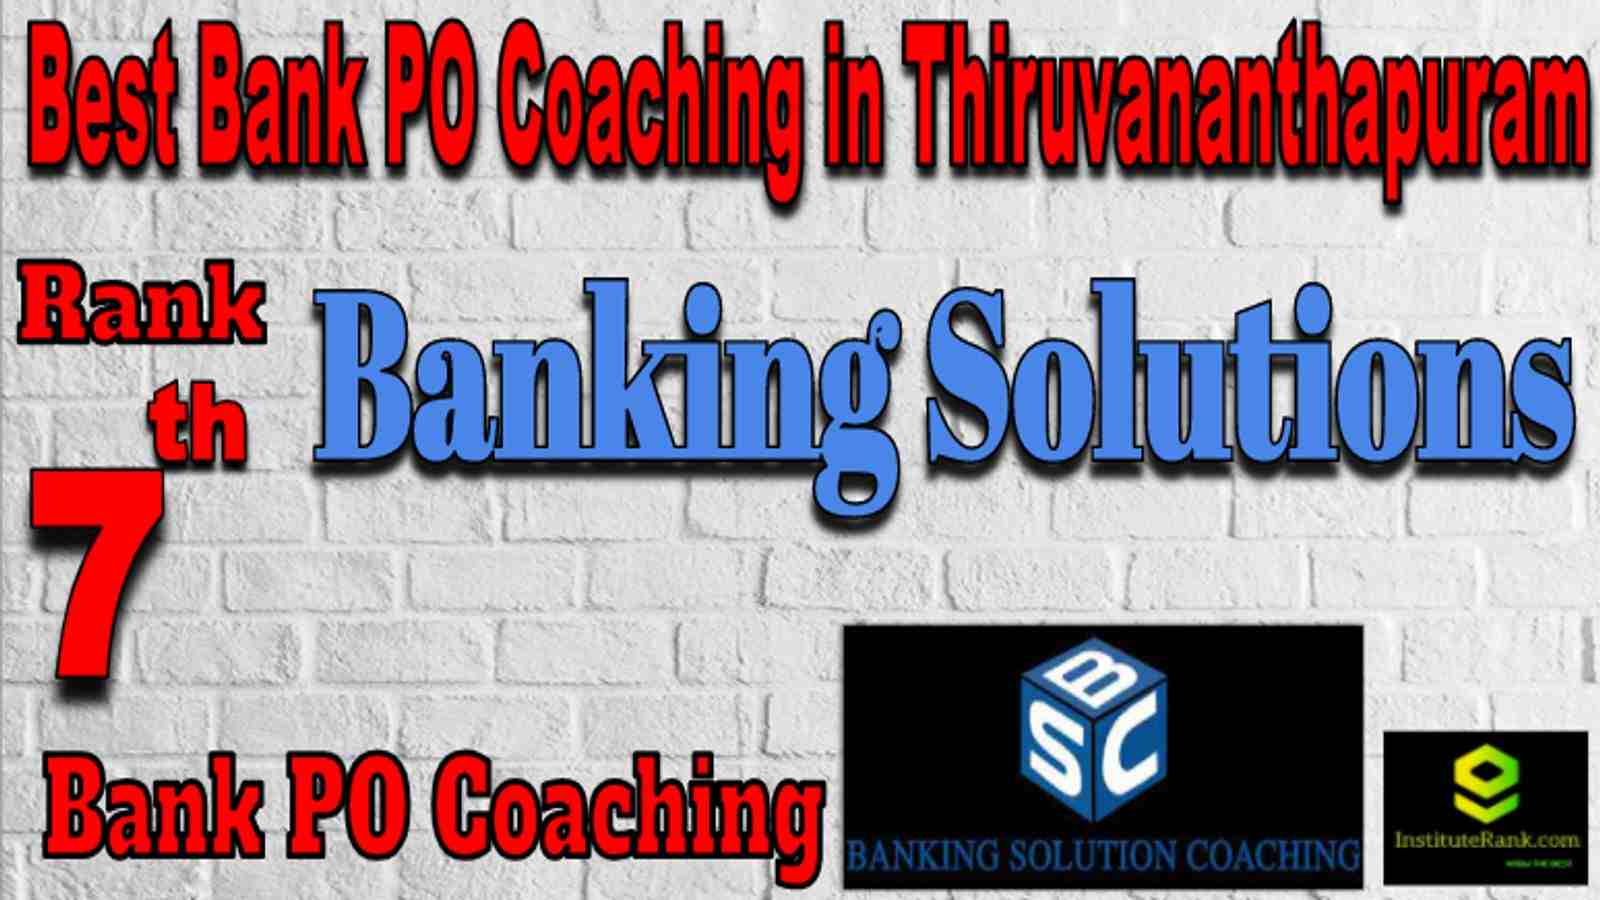 Rank 7 Best Bank PO Coaching in Thiruvananthapuram